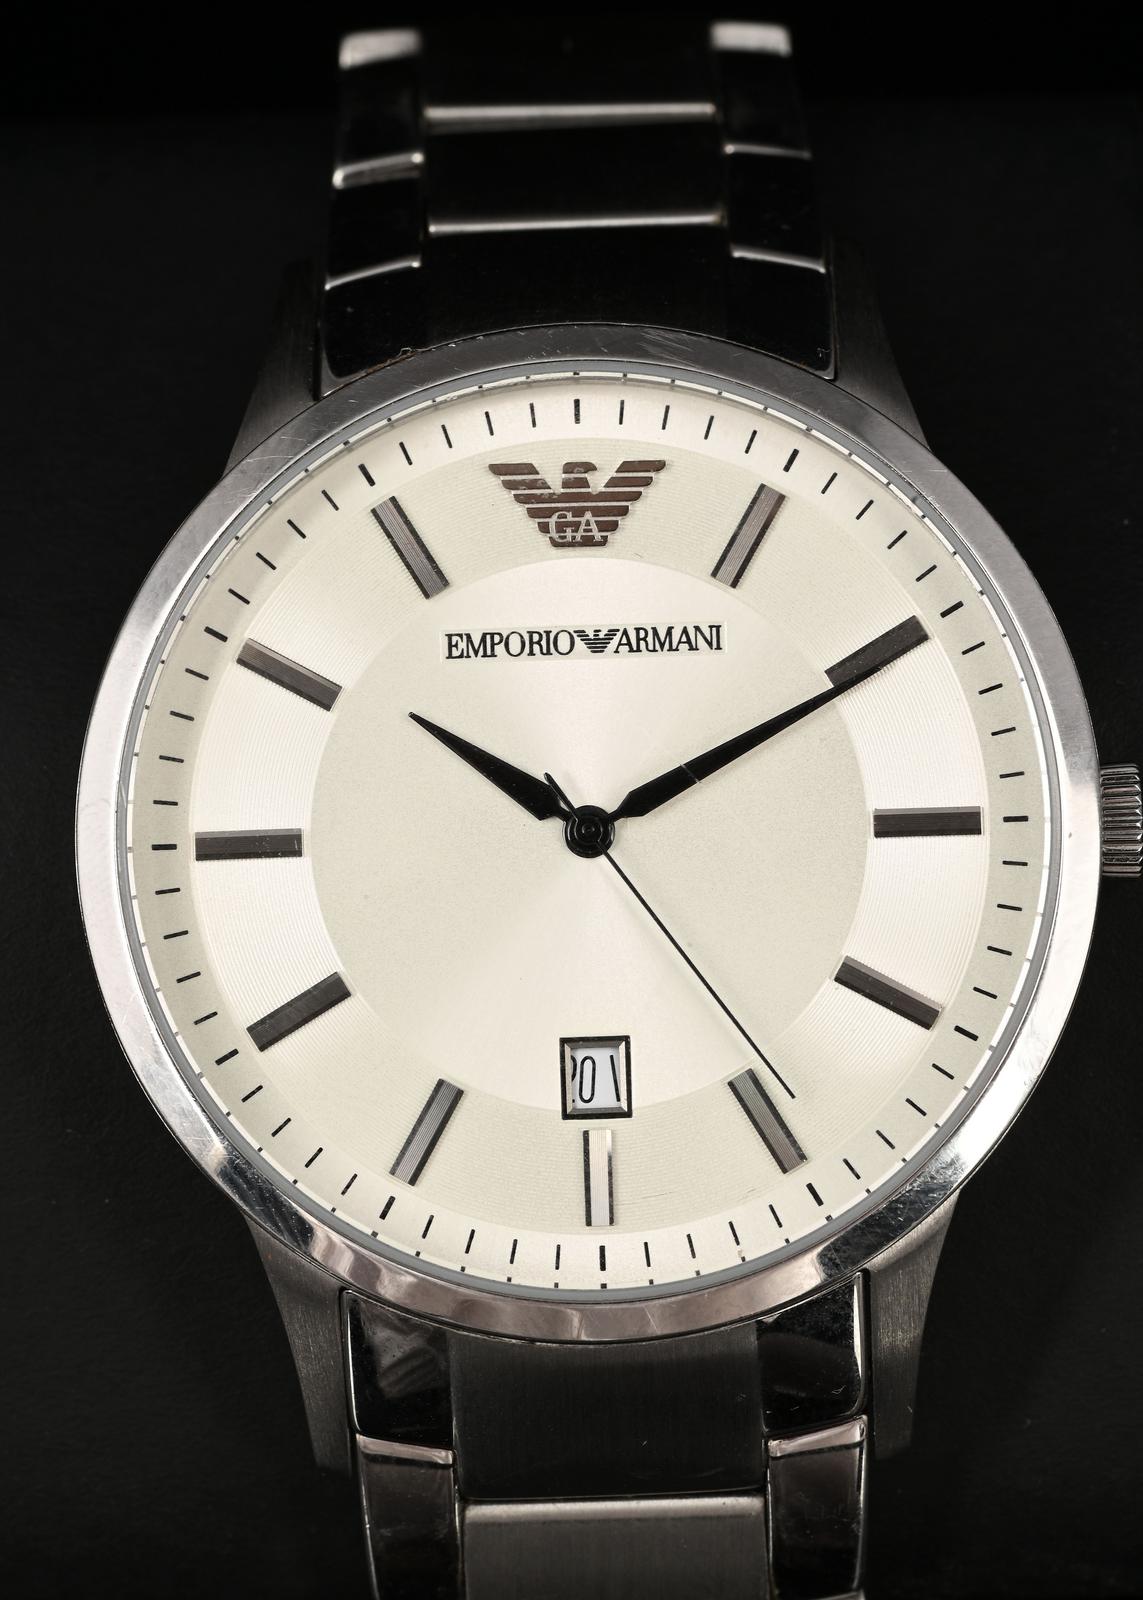 Emporio Armani Classic Quartz White Dial Silver Steel Strap Watch For Men - AR2430